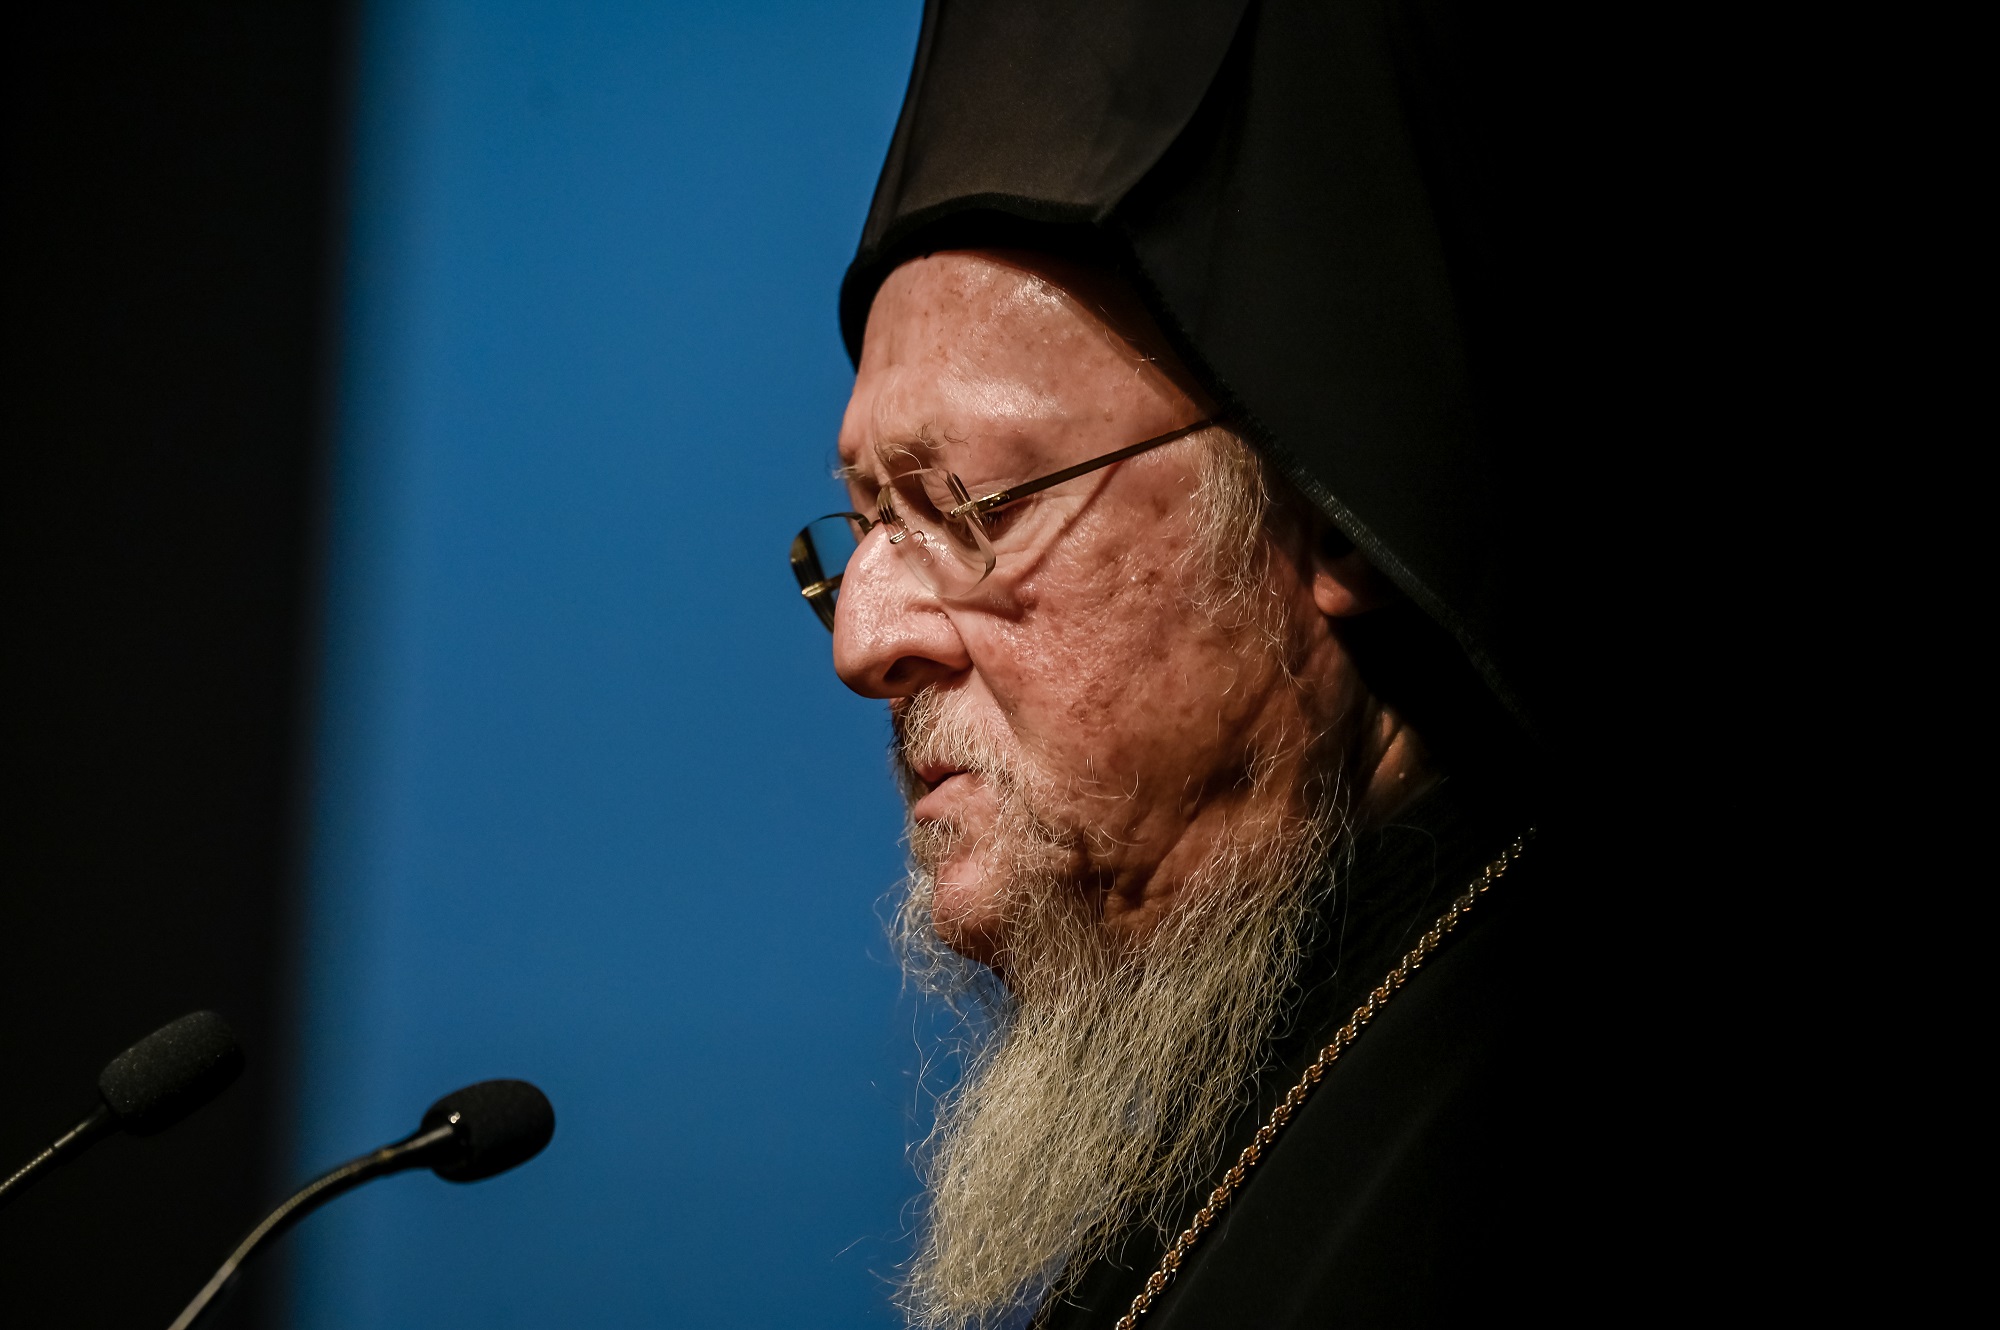 Τιμητική εκδήλωση για τον Οικουμενικό Πατριάρχη Βαρθολομαίο στο Μέγαρο Μουσικής (video)